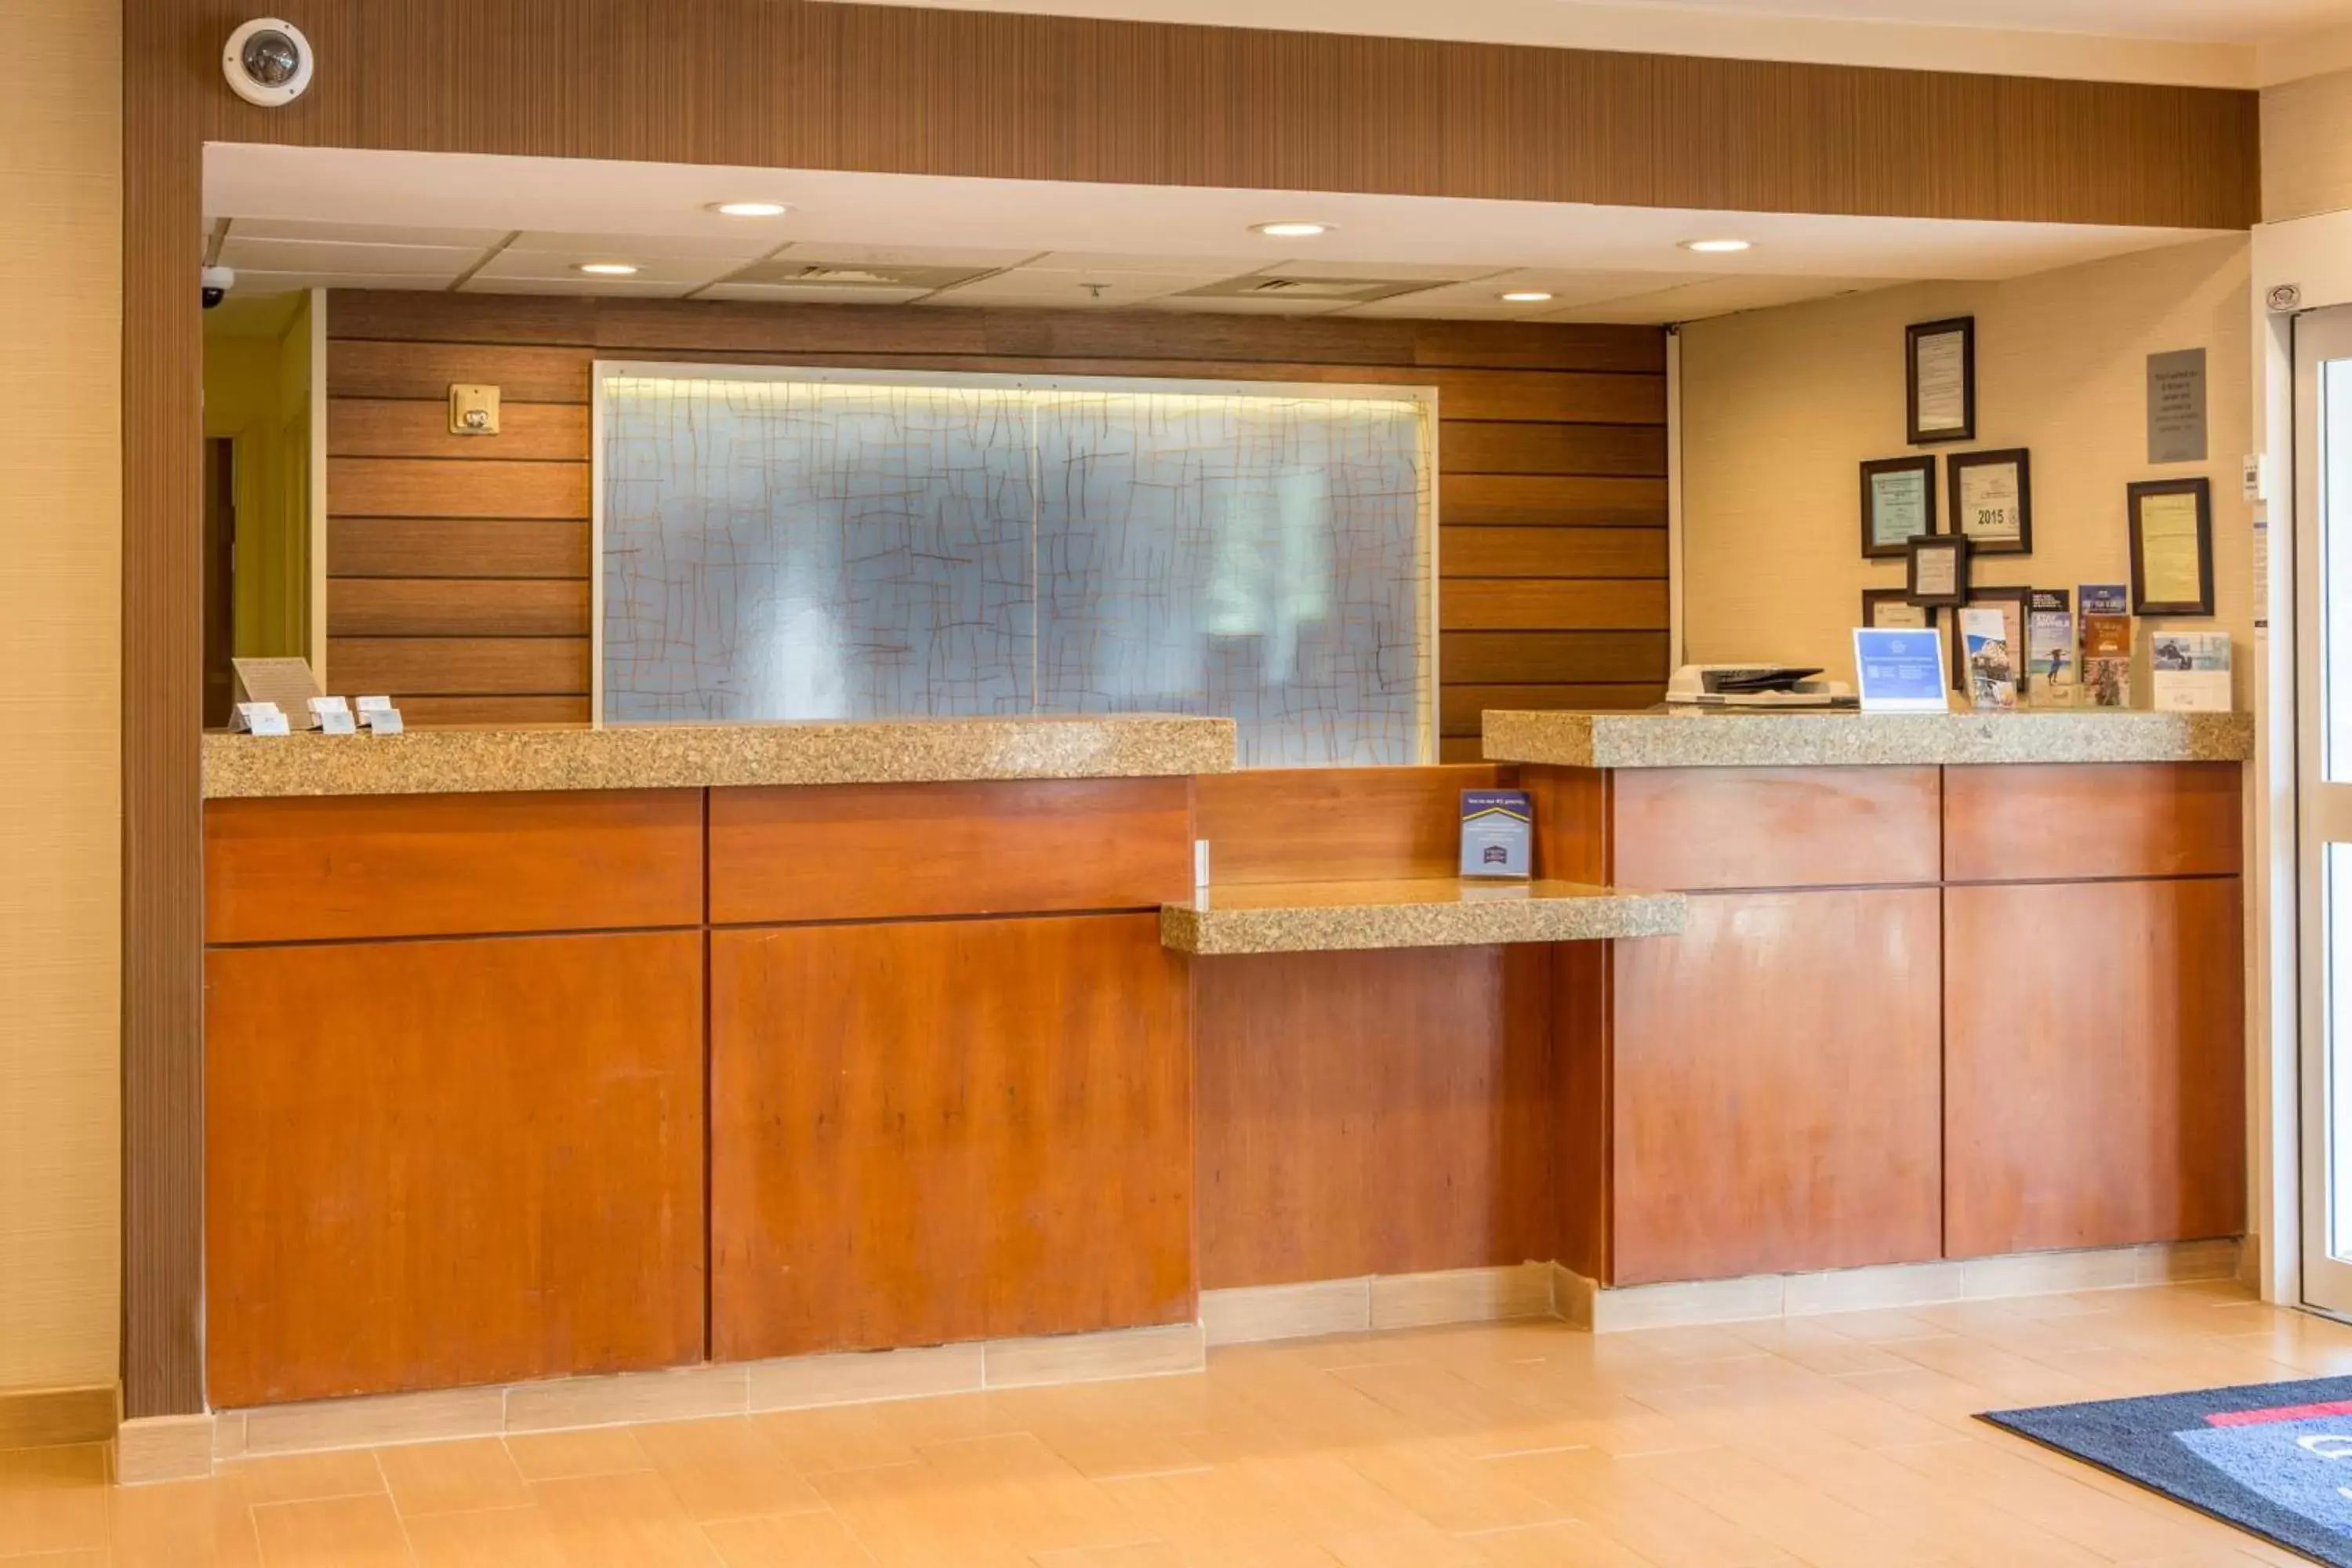 Lobby or reception, Lobby/Reception in Fairfield Inn & Suites by Marriott Columbus